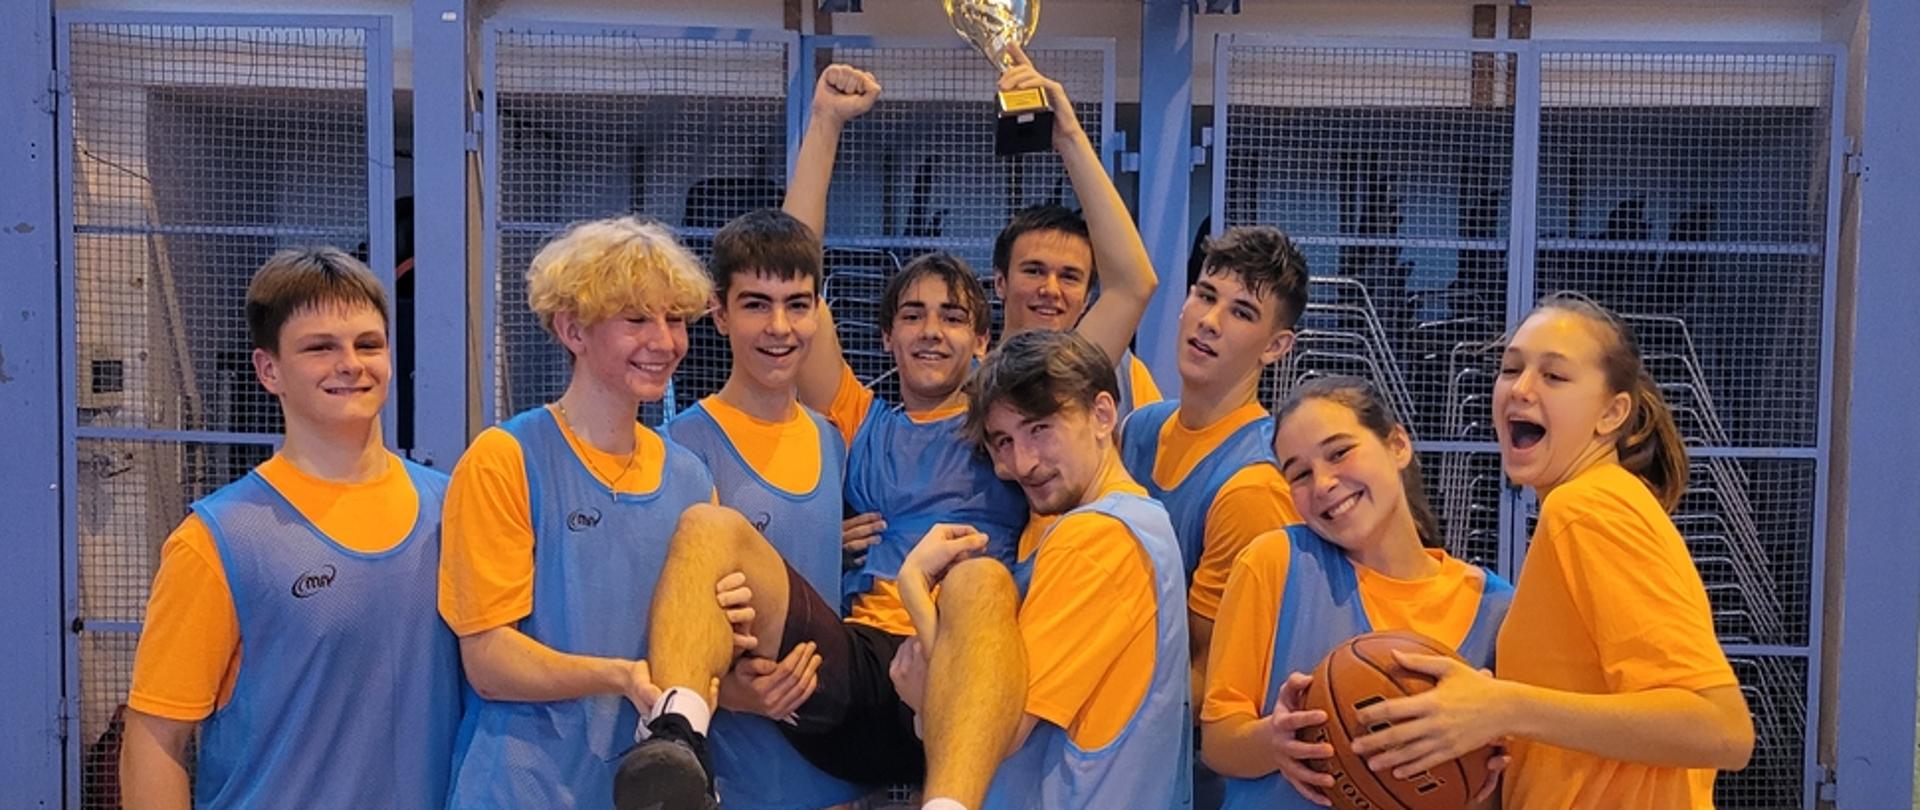 zdjęcie przedstawia drużynę w niebieskich koszulkach z pucharem zwycięstwa we wspólnym zdjęciu pod koszem na sali gimnastycznej